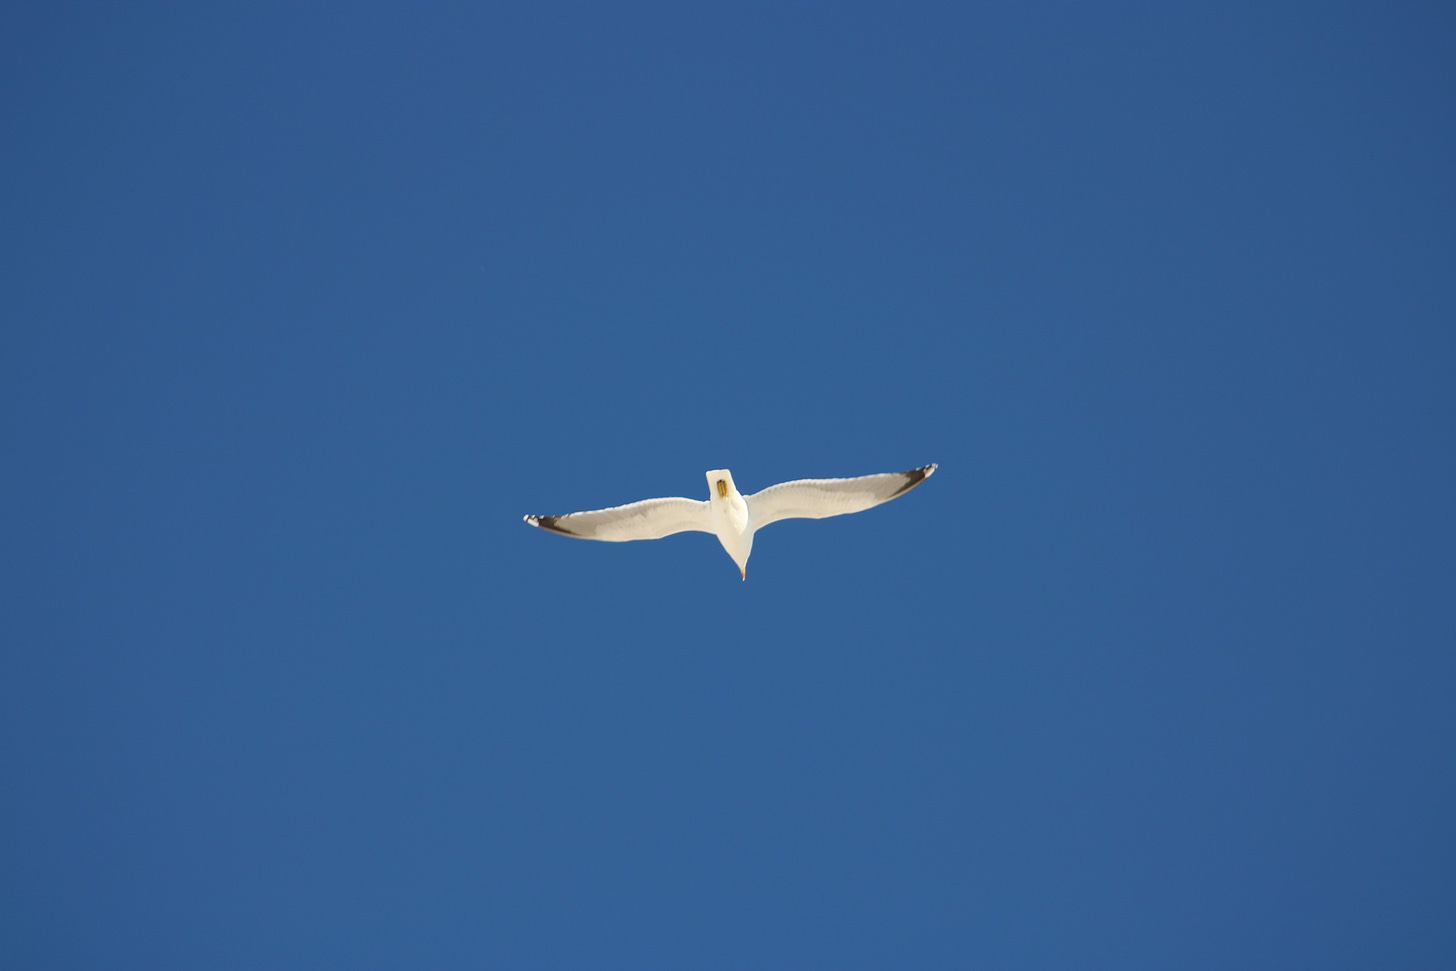 Image of gull flying away